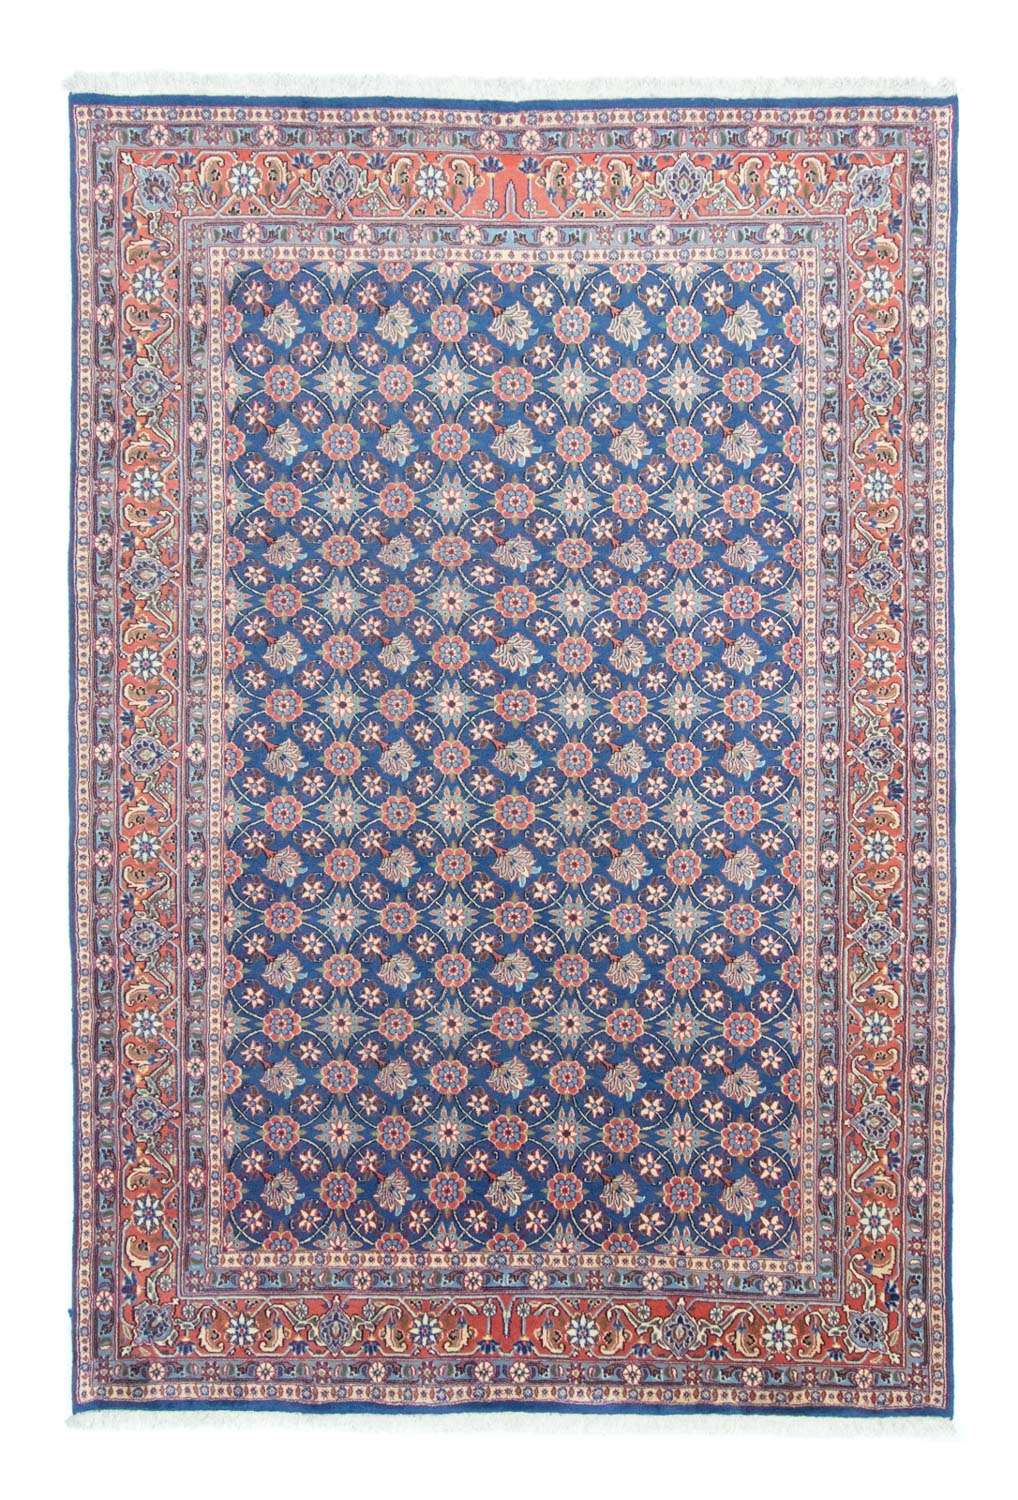 Alfombra persa - Nómada - 295 x 201 cm - azul